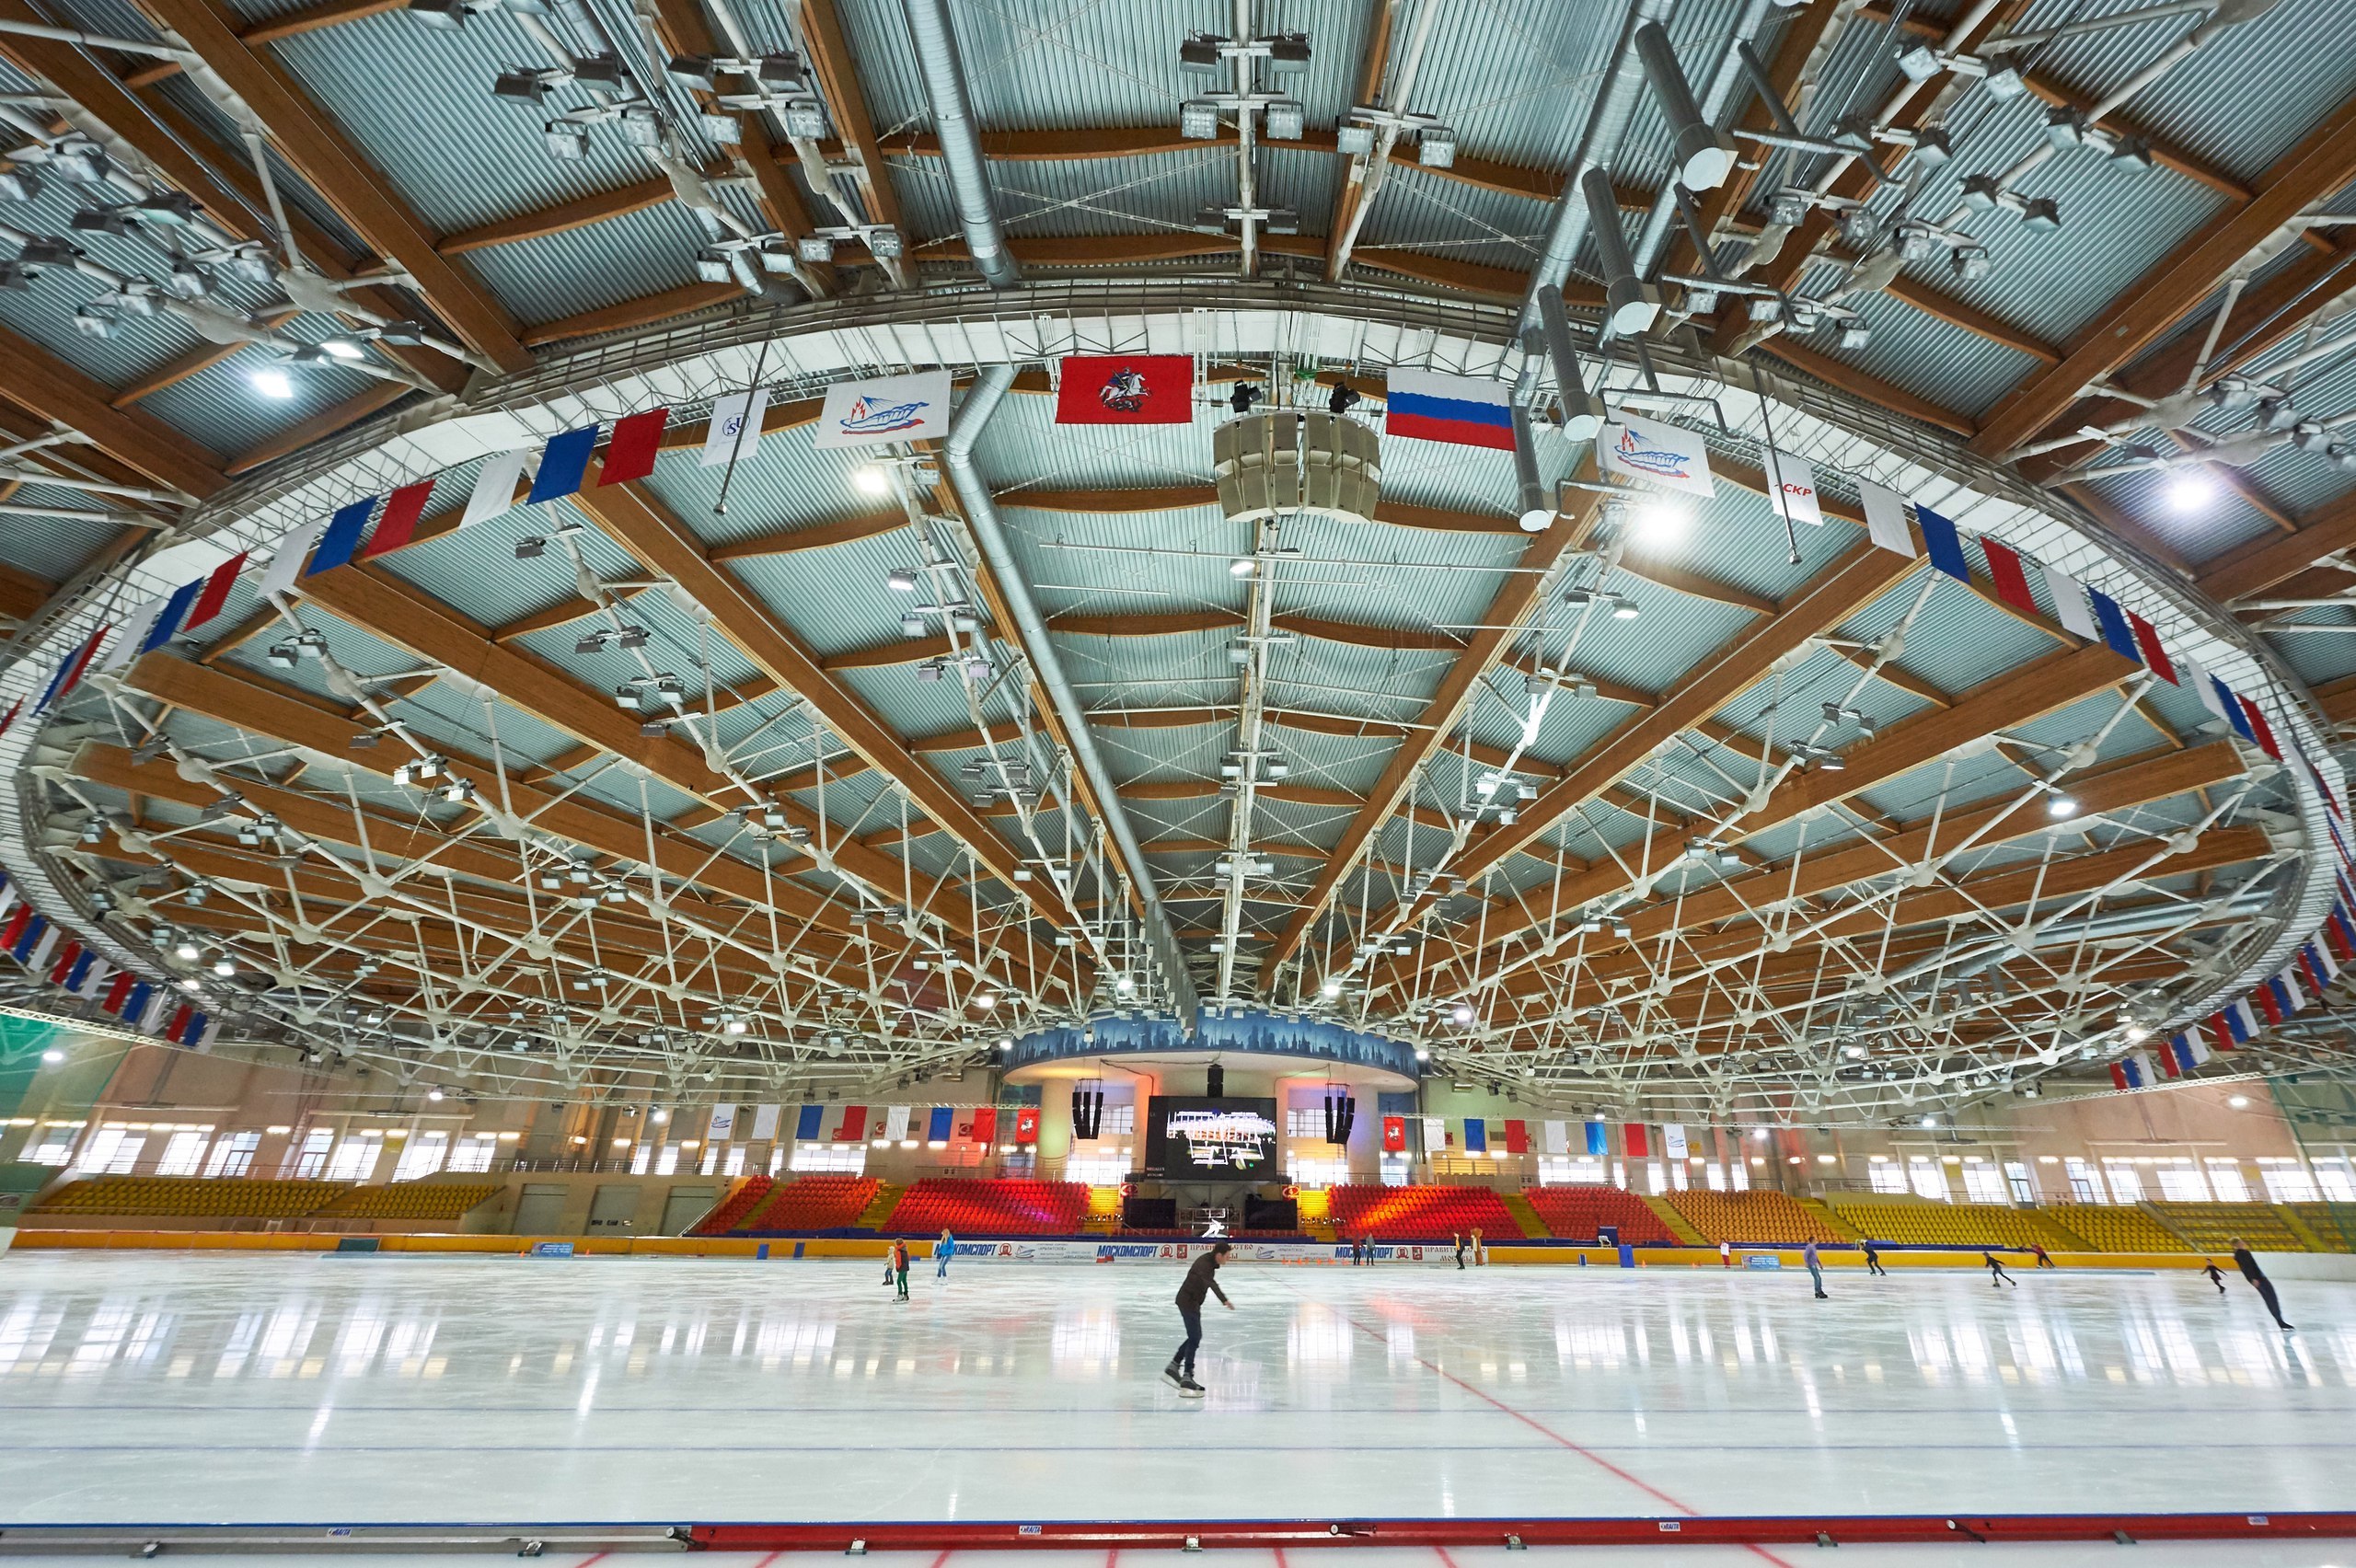 Дворец ледового спорта «Крылатское» – афиша